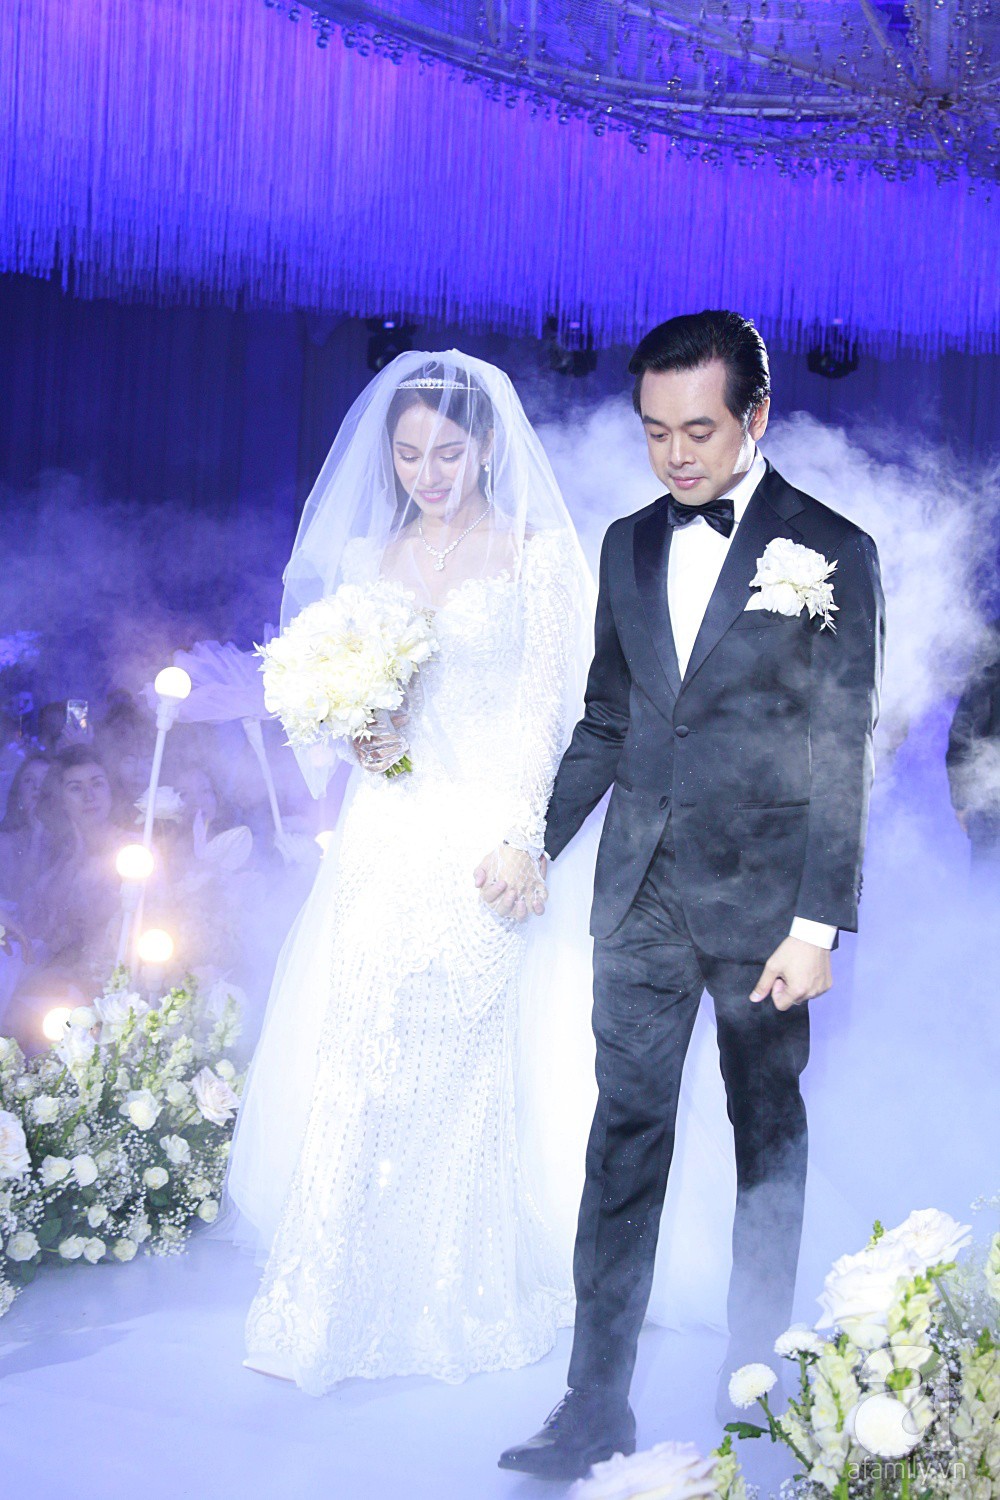 Tiệc cưới chính thức bắt đầu, cô dâu Sara Lưu âu yếm lau nhẹ vết son của mình trên môi chú rể Dương Khắc Linh-6